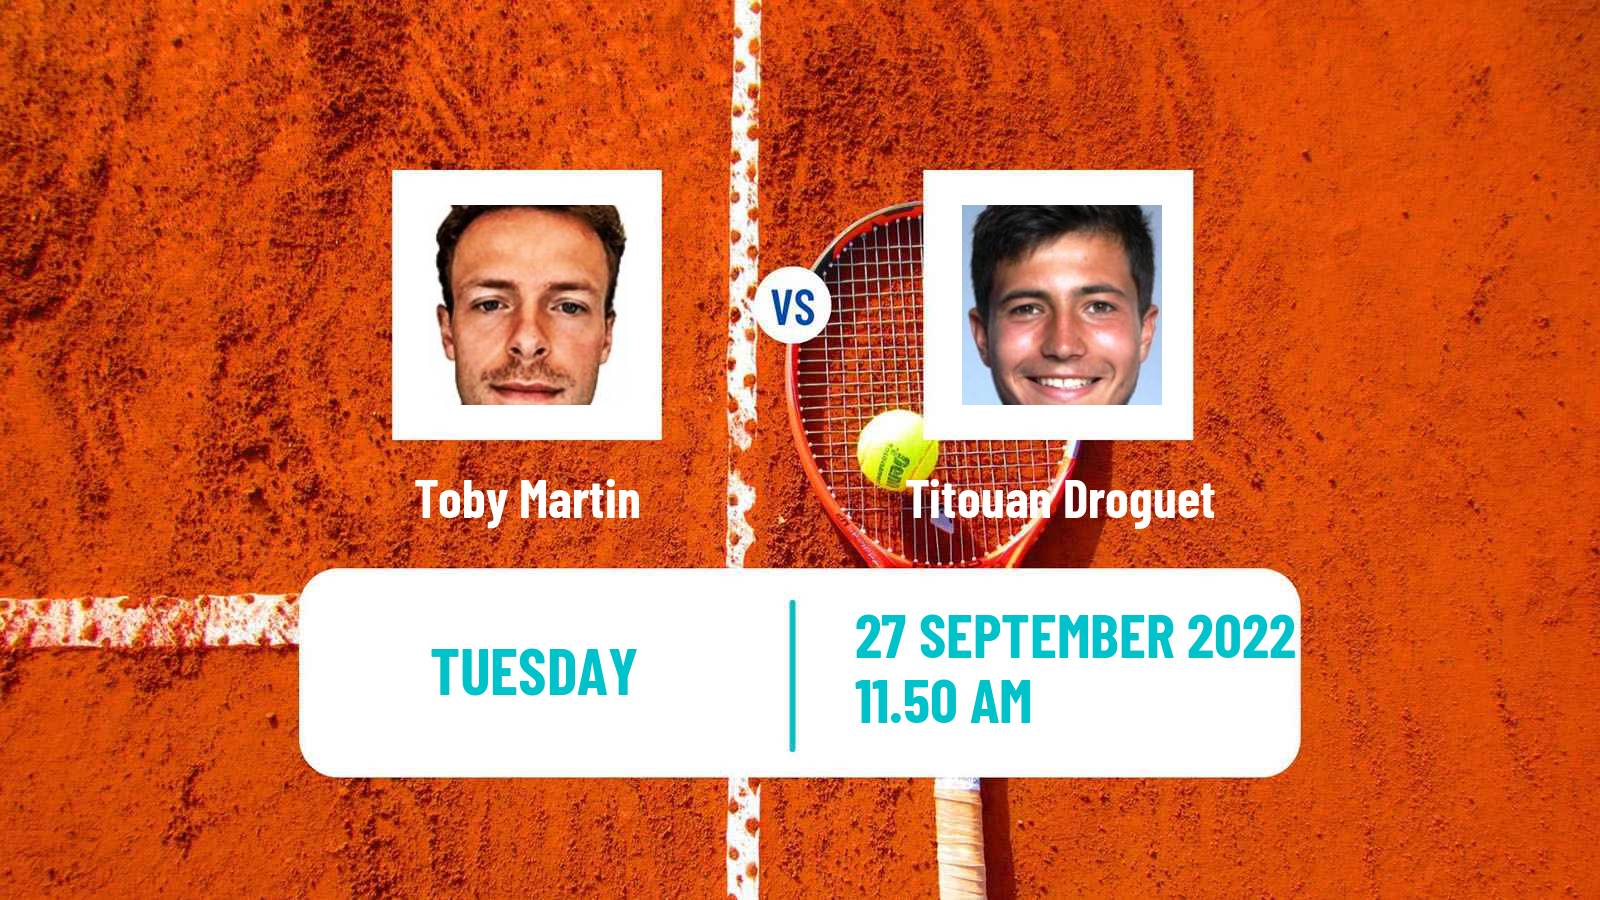 Tennis ITF Tournaments Toby Martin - Titouan Droguet